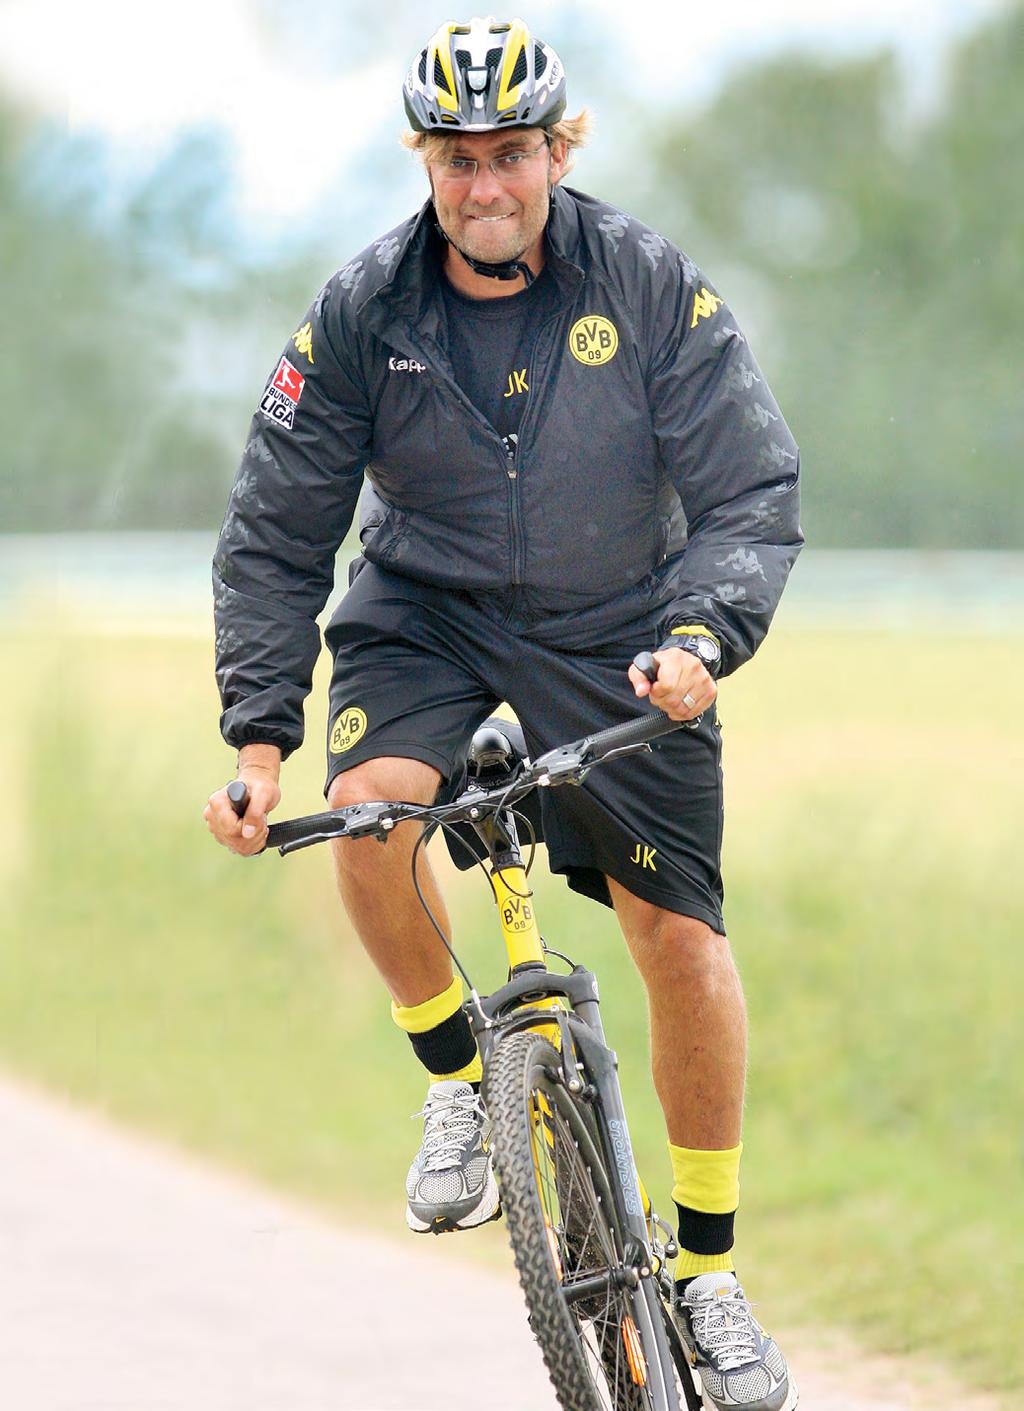 Prominent vertreten Im Jahr 2011 konnten wir das Team von Borussia Dortmund während ihres Traininglagers in Donaueschingen mit unseren Fanbikes unterstützen.